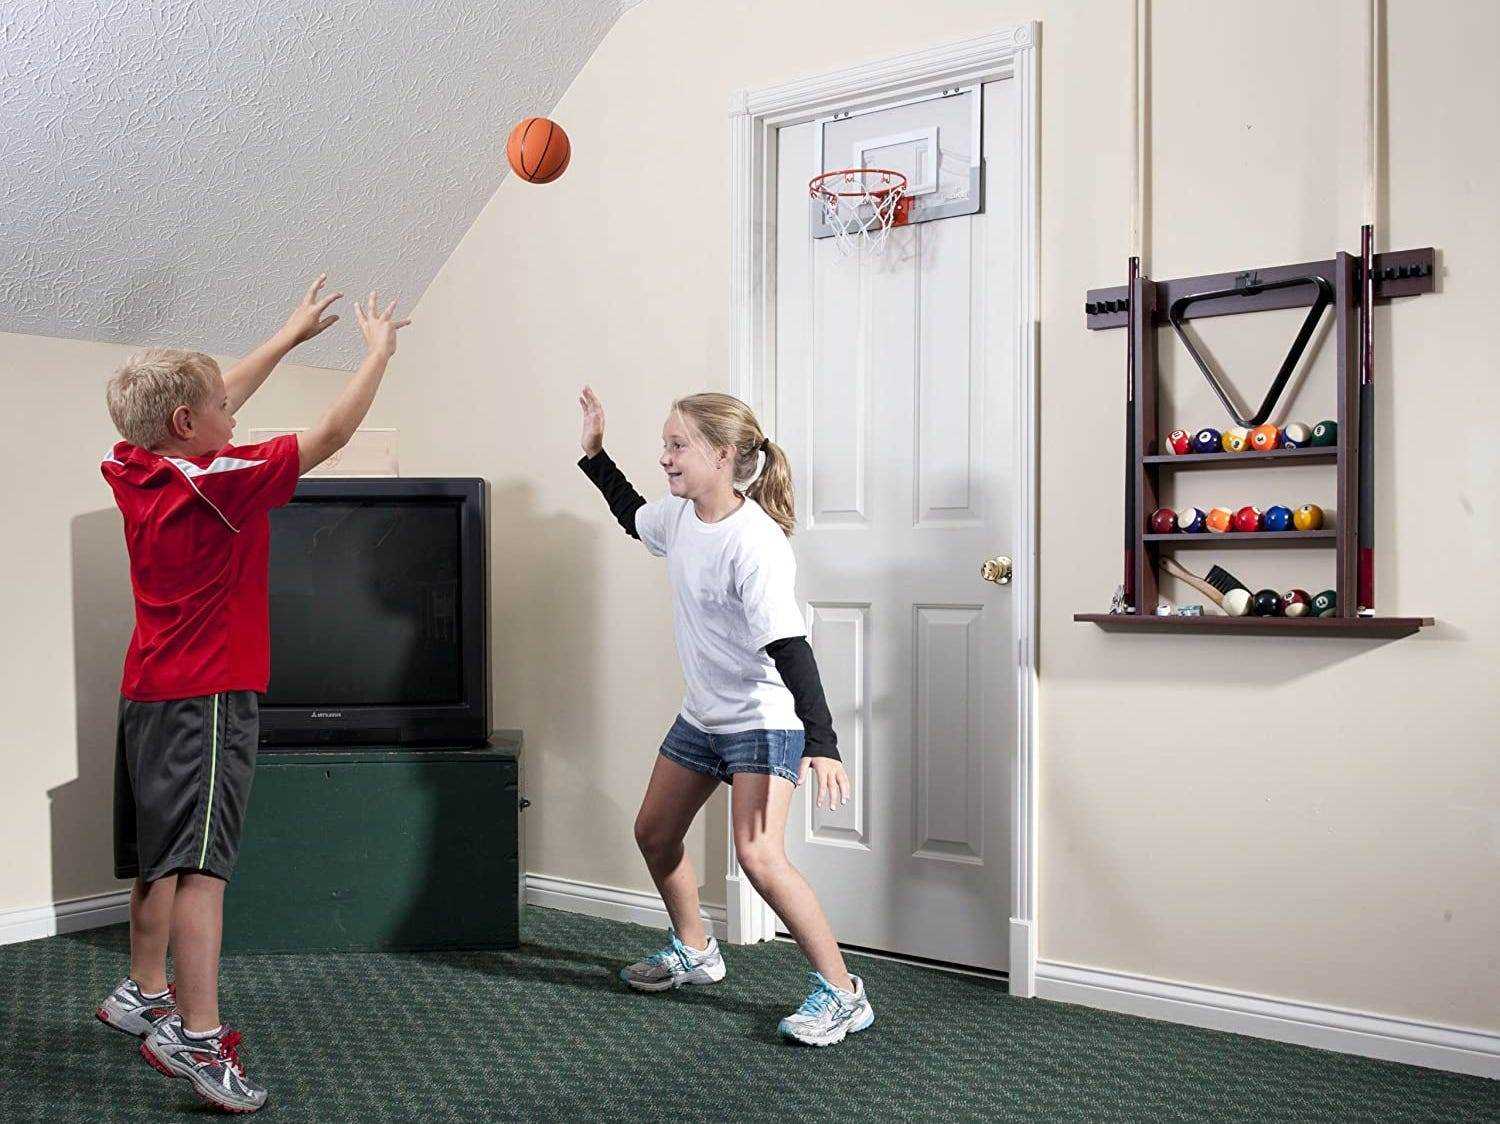 Ein Junge schießt mit einem Spielzeugbasketball auf einen Basketballkorb über der Tür, während ein Mädchen ihn blockiert